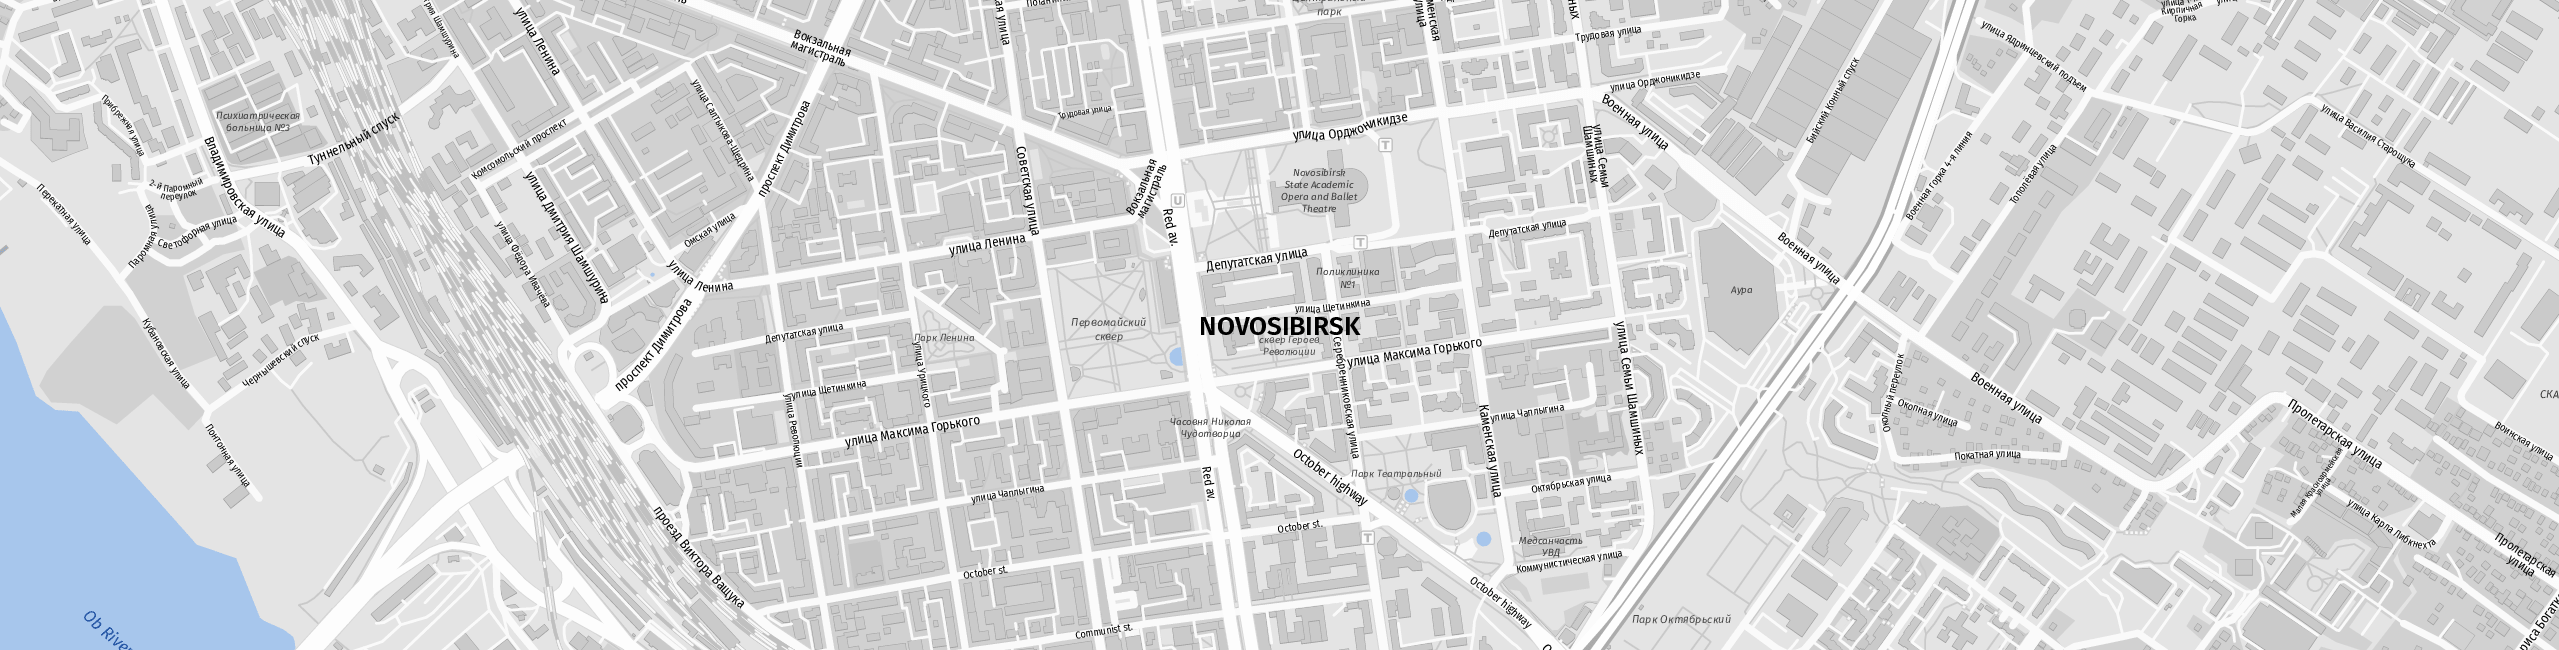 Stadtplan Nowosibirsk zum Downloaden.